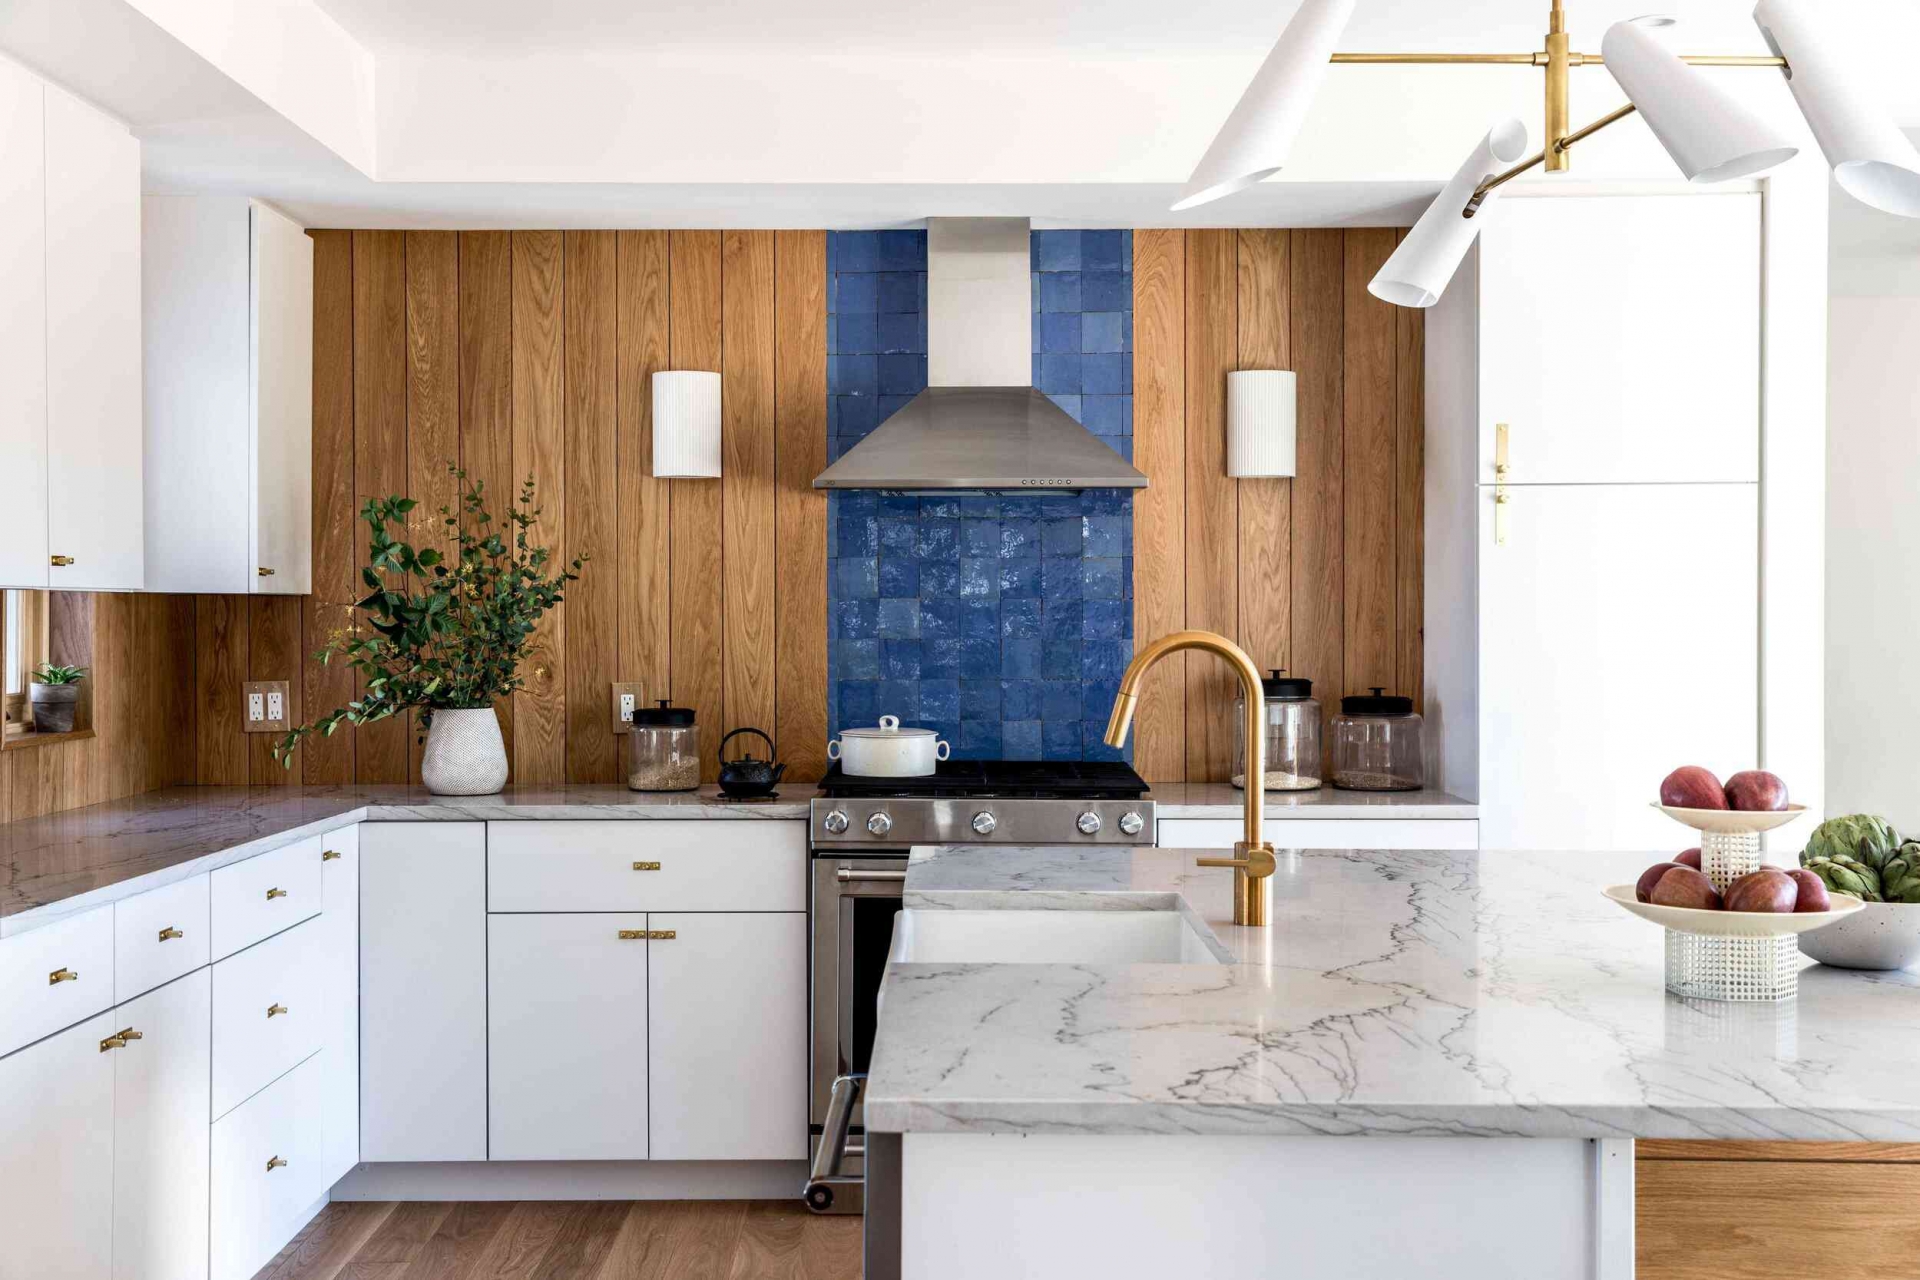 Bức tường trong phòng bếp thay vì chỉ sử dụng gạch màu xanh coban lấp lánh ngay sau bếp nấu thì nhà thiết kế đã lựa chọn vật liệu gỗ ốp dọc quanh khu vực backsplash vừa để tạo chiều sâu cho bếp màu trắng vừa giúp sắc xanh nổi bật hơn.